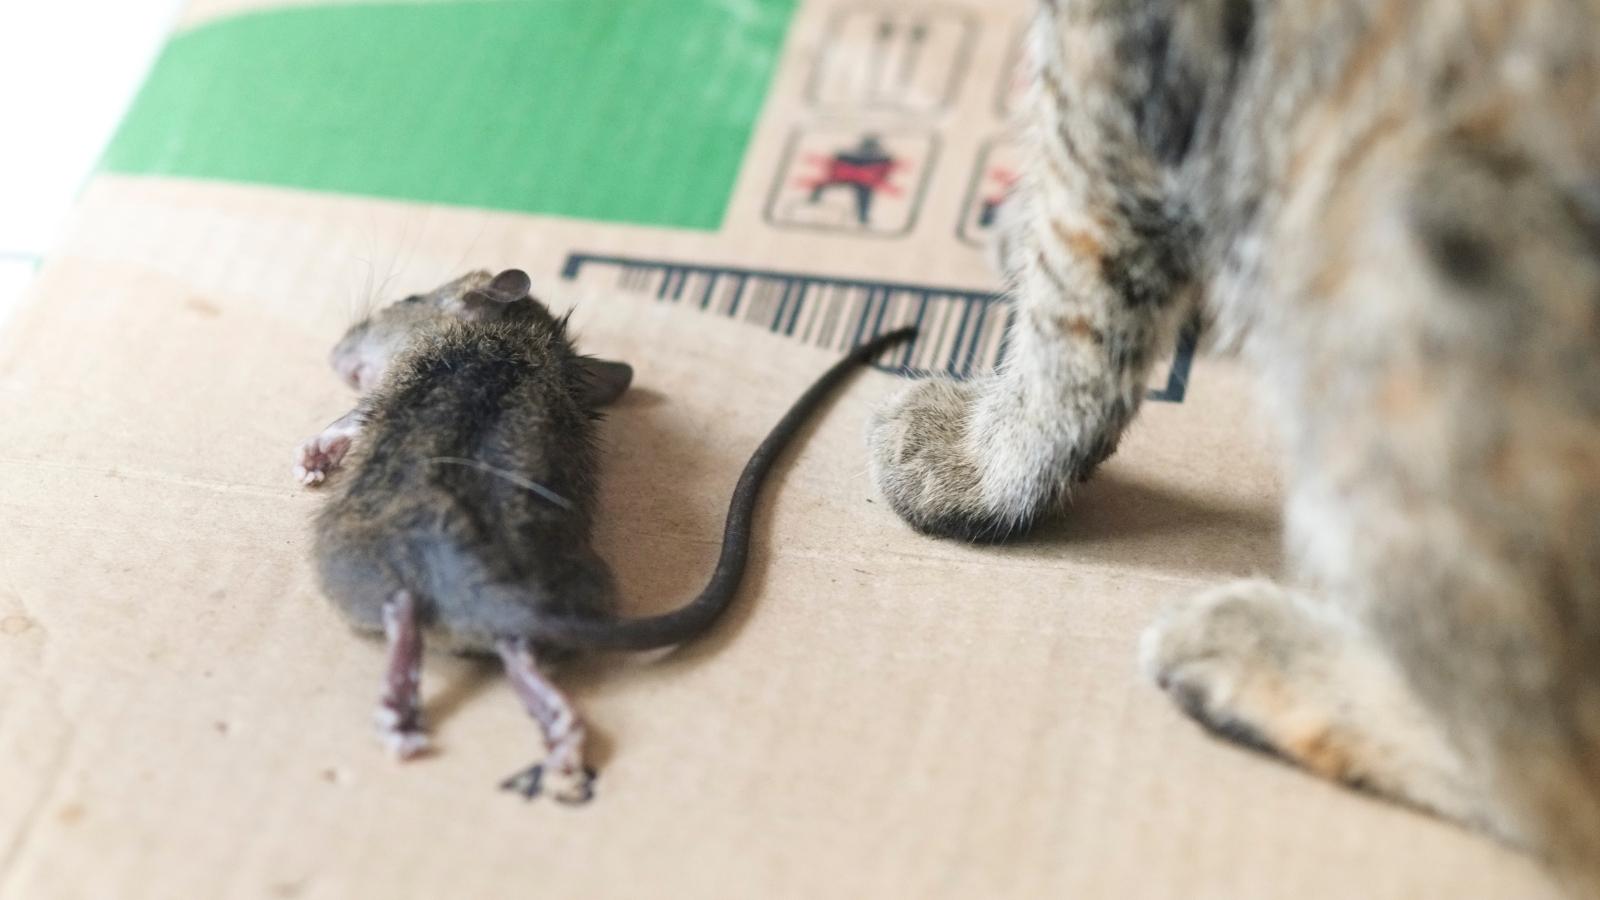 Mice eaten by a cat